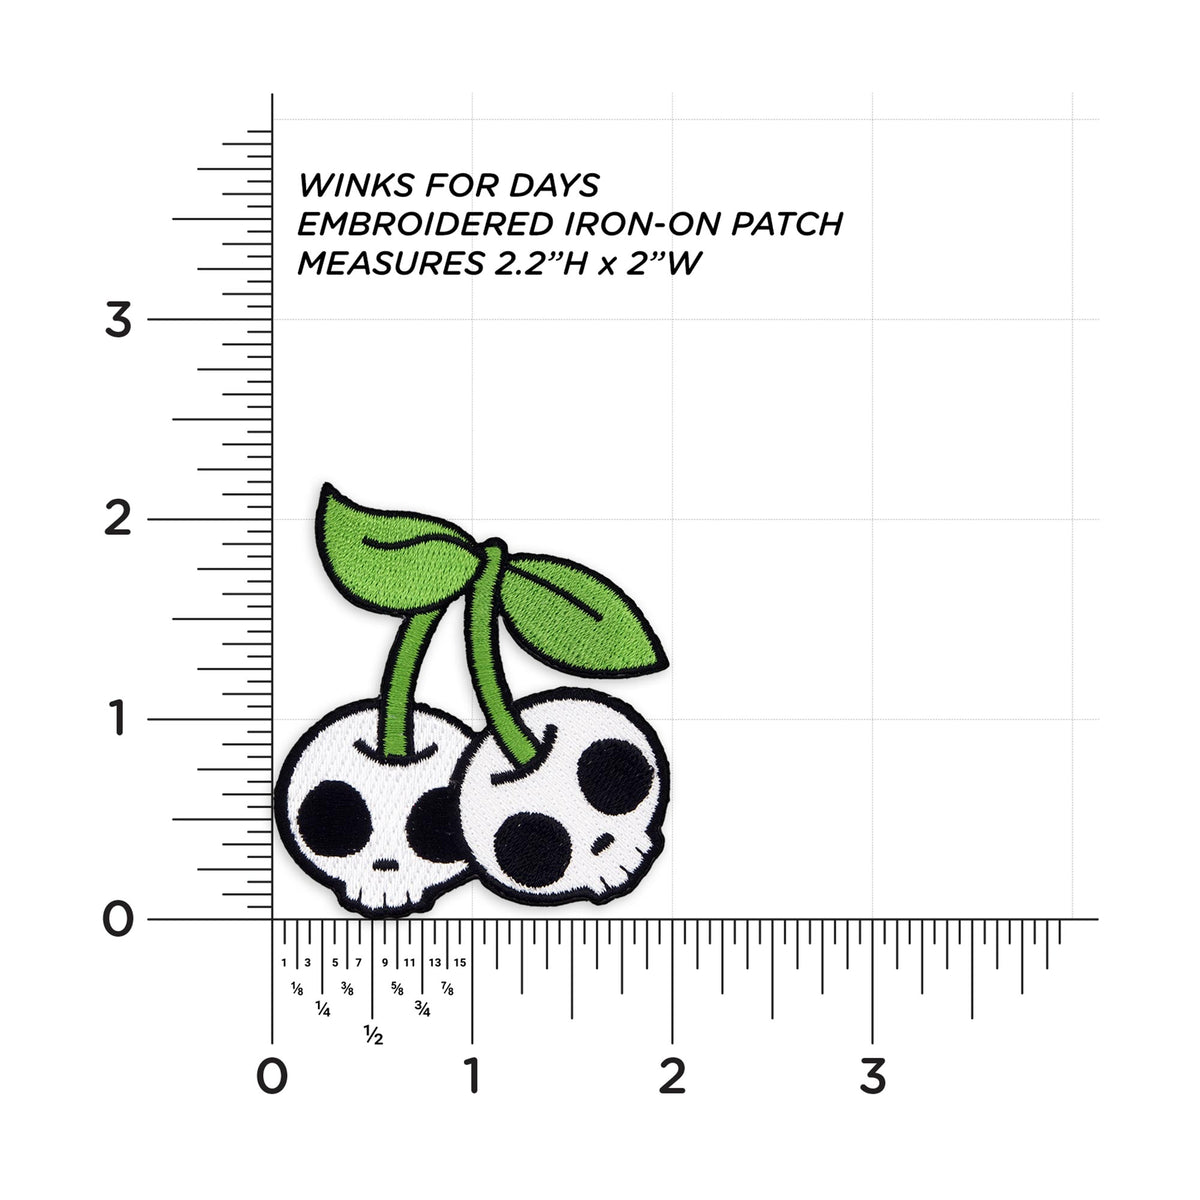 Cherry Skulls measurements